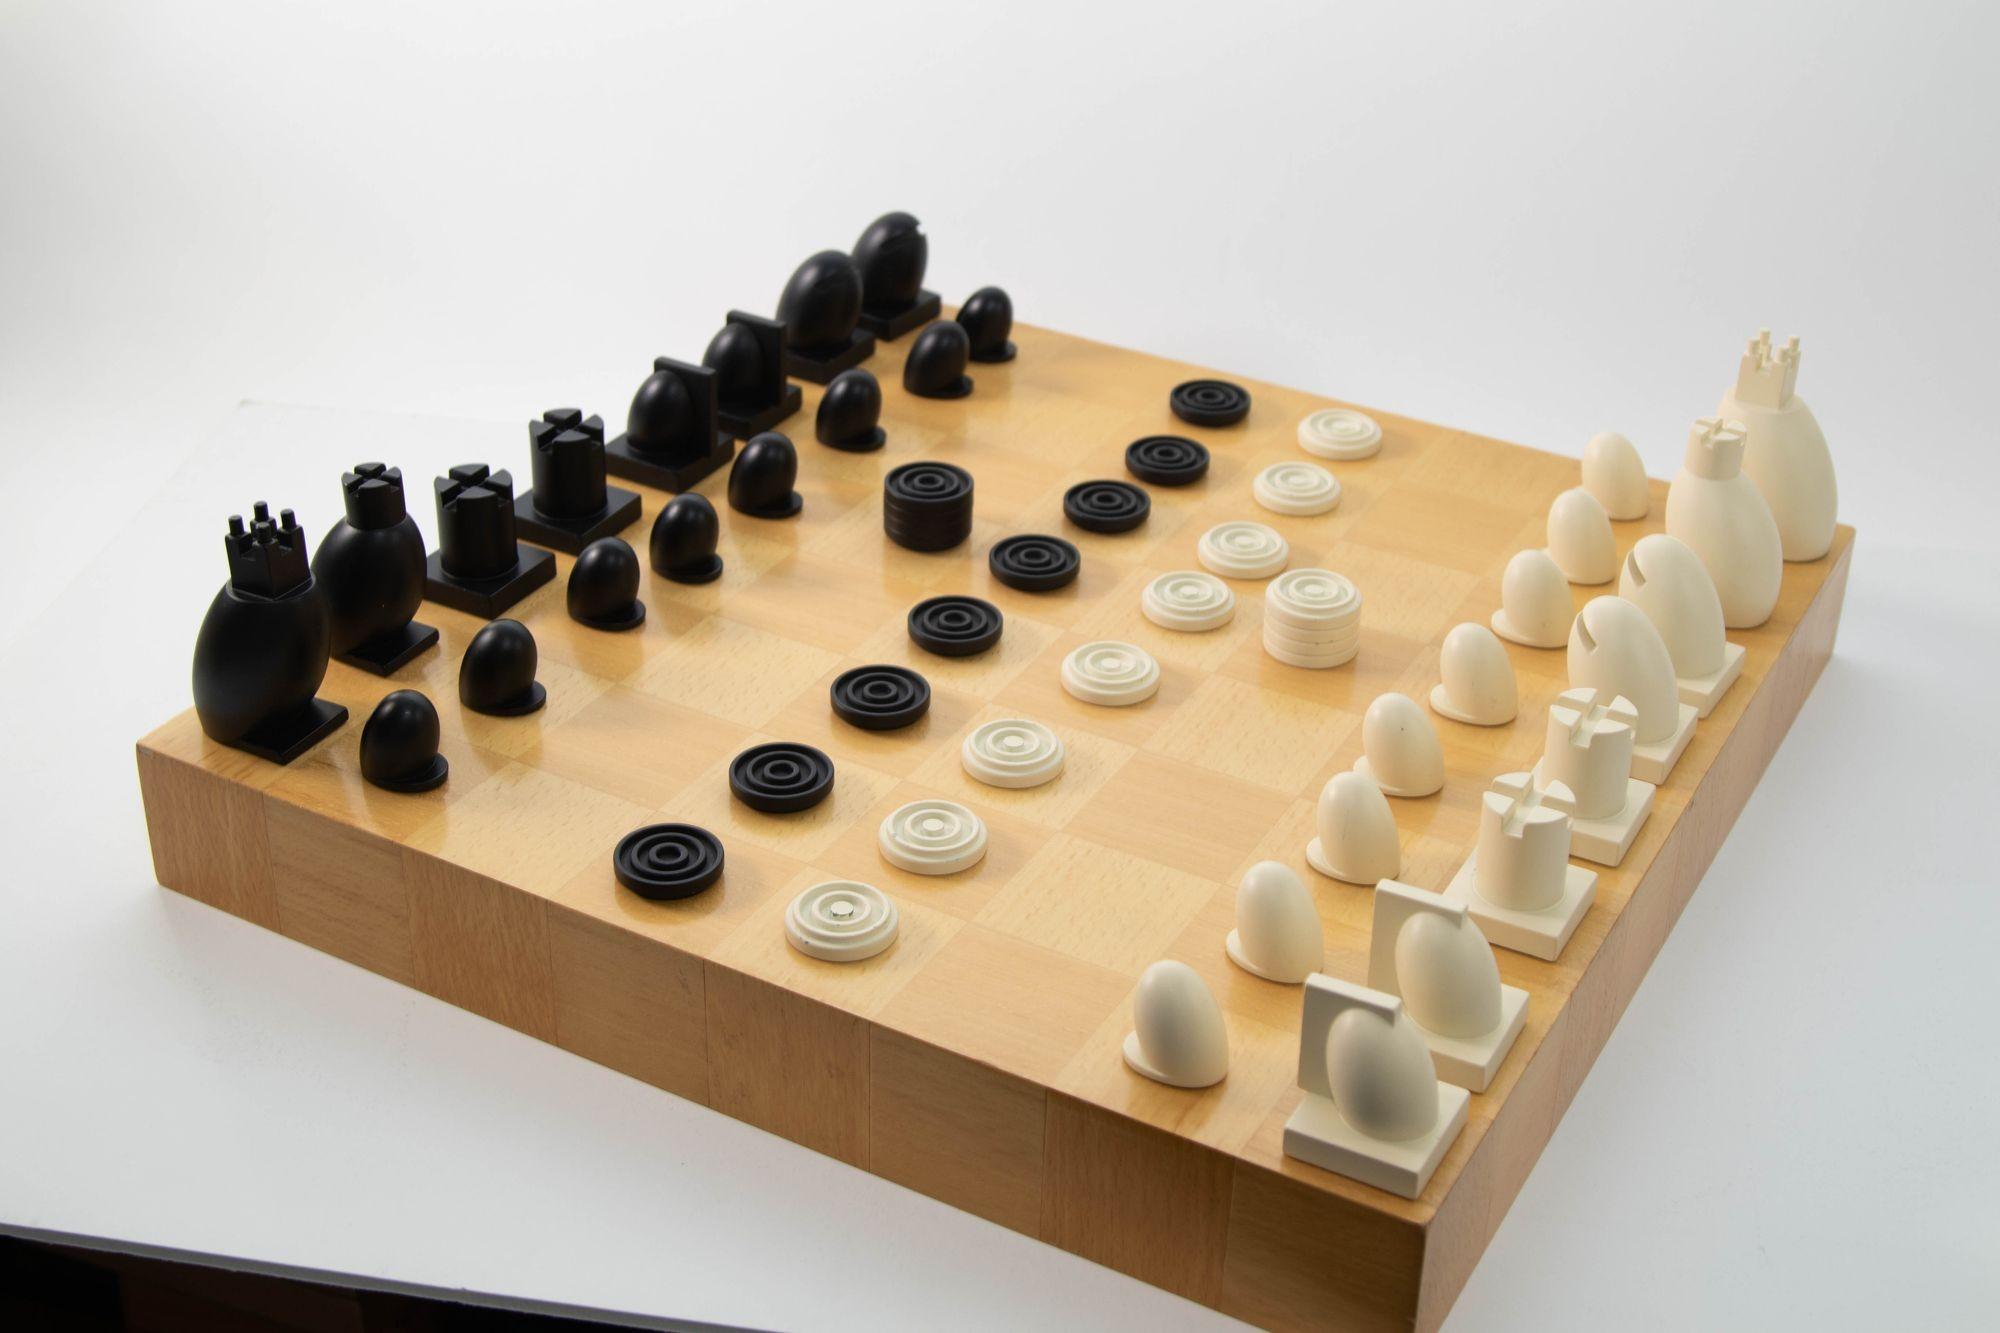 Michael Graves Postmodern Chess and Checkers Set (Jeu d'échecs et de dames postmoderne).
Jeu d'échecs et de dames original et postmoderne de Michael Graves.
Jeu d'échecs et de dames en bois d'érable avec plateau et boîte par le célèbre architecte